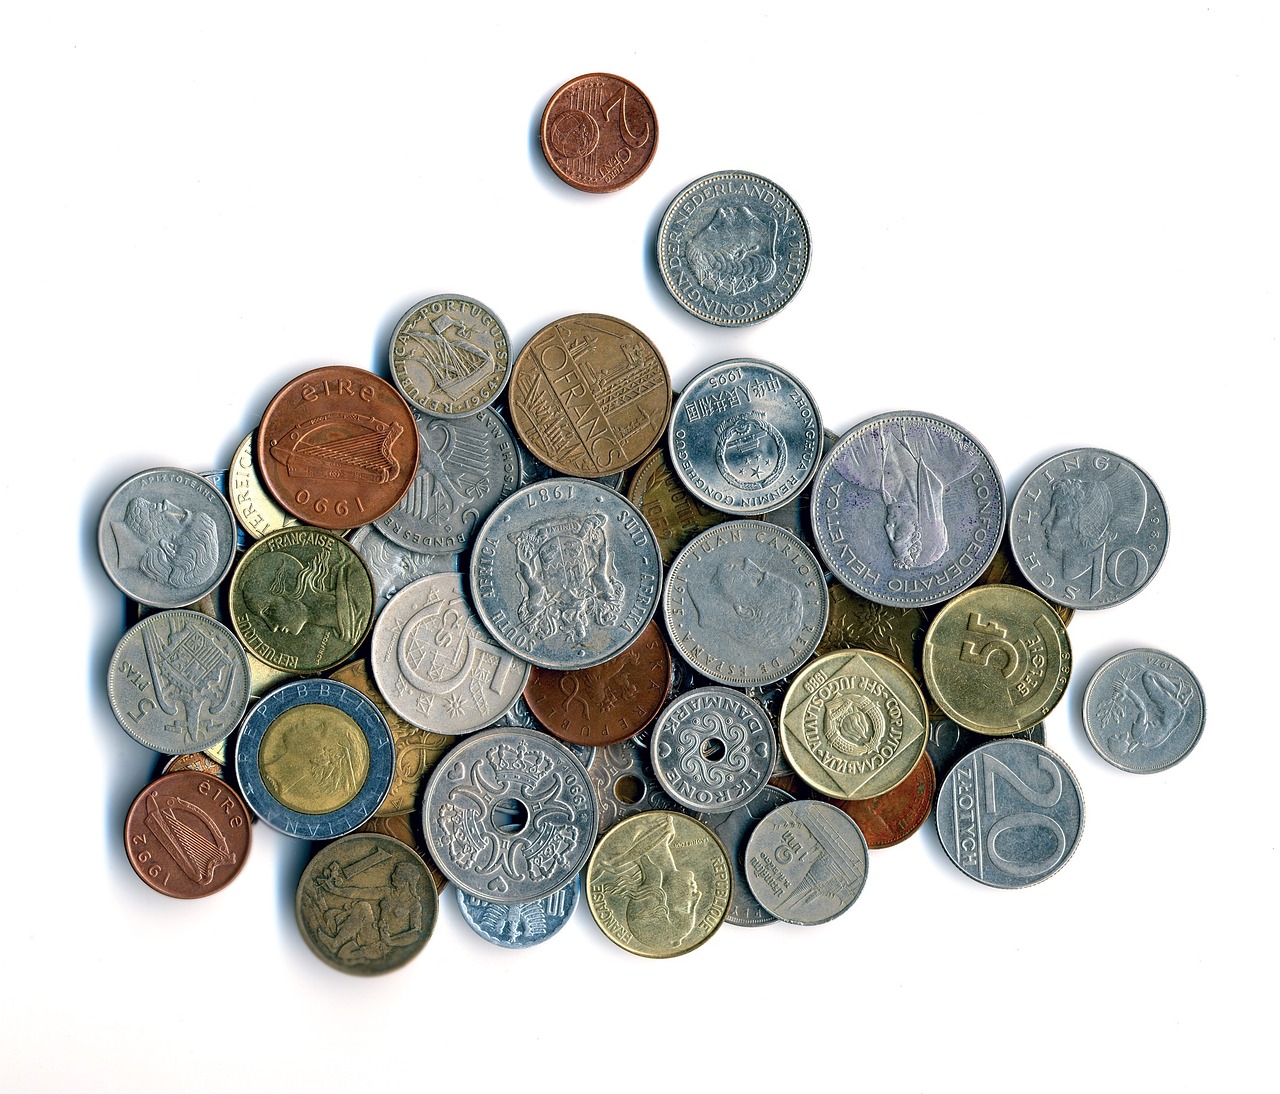 Deretan Koin Kuno Termahal Didunia dan Harga Jual Yang Miliaran Rupiah, Fantastis Bukan!